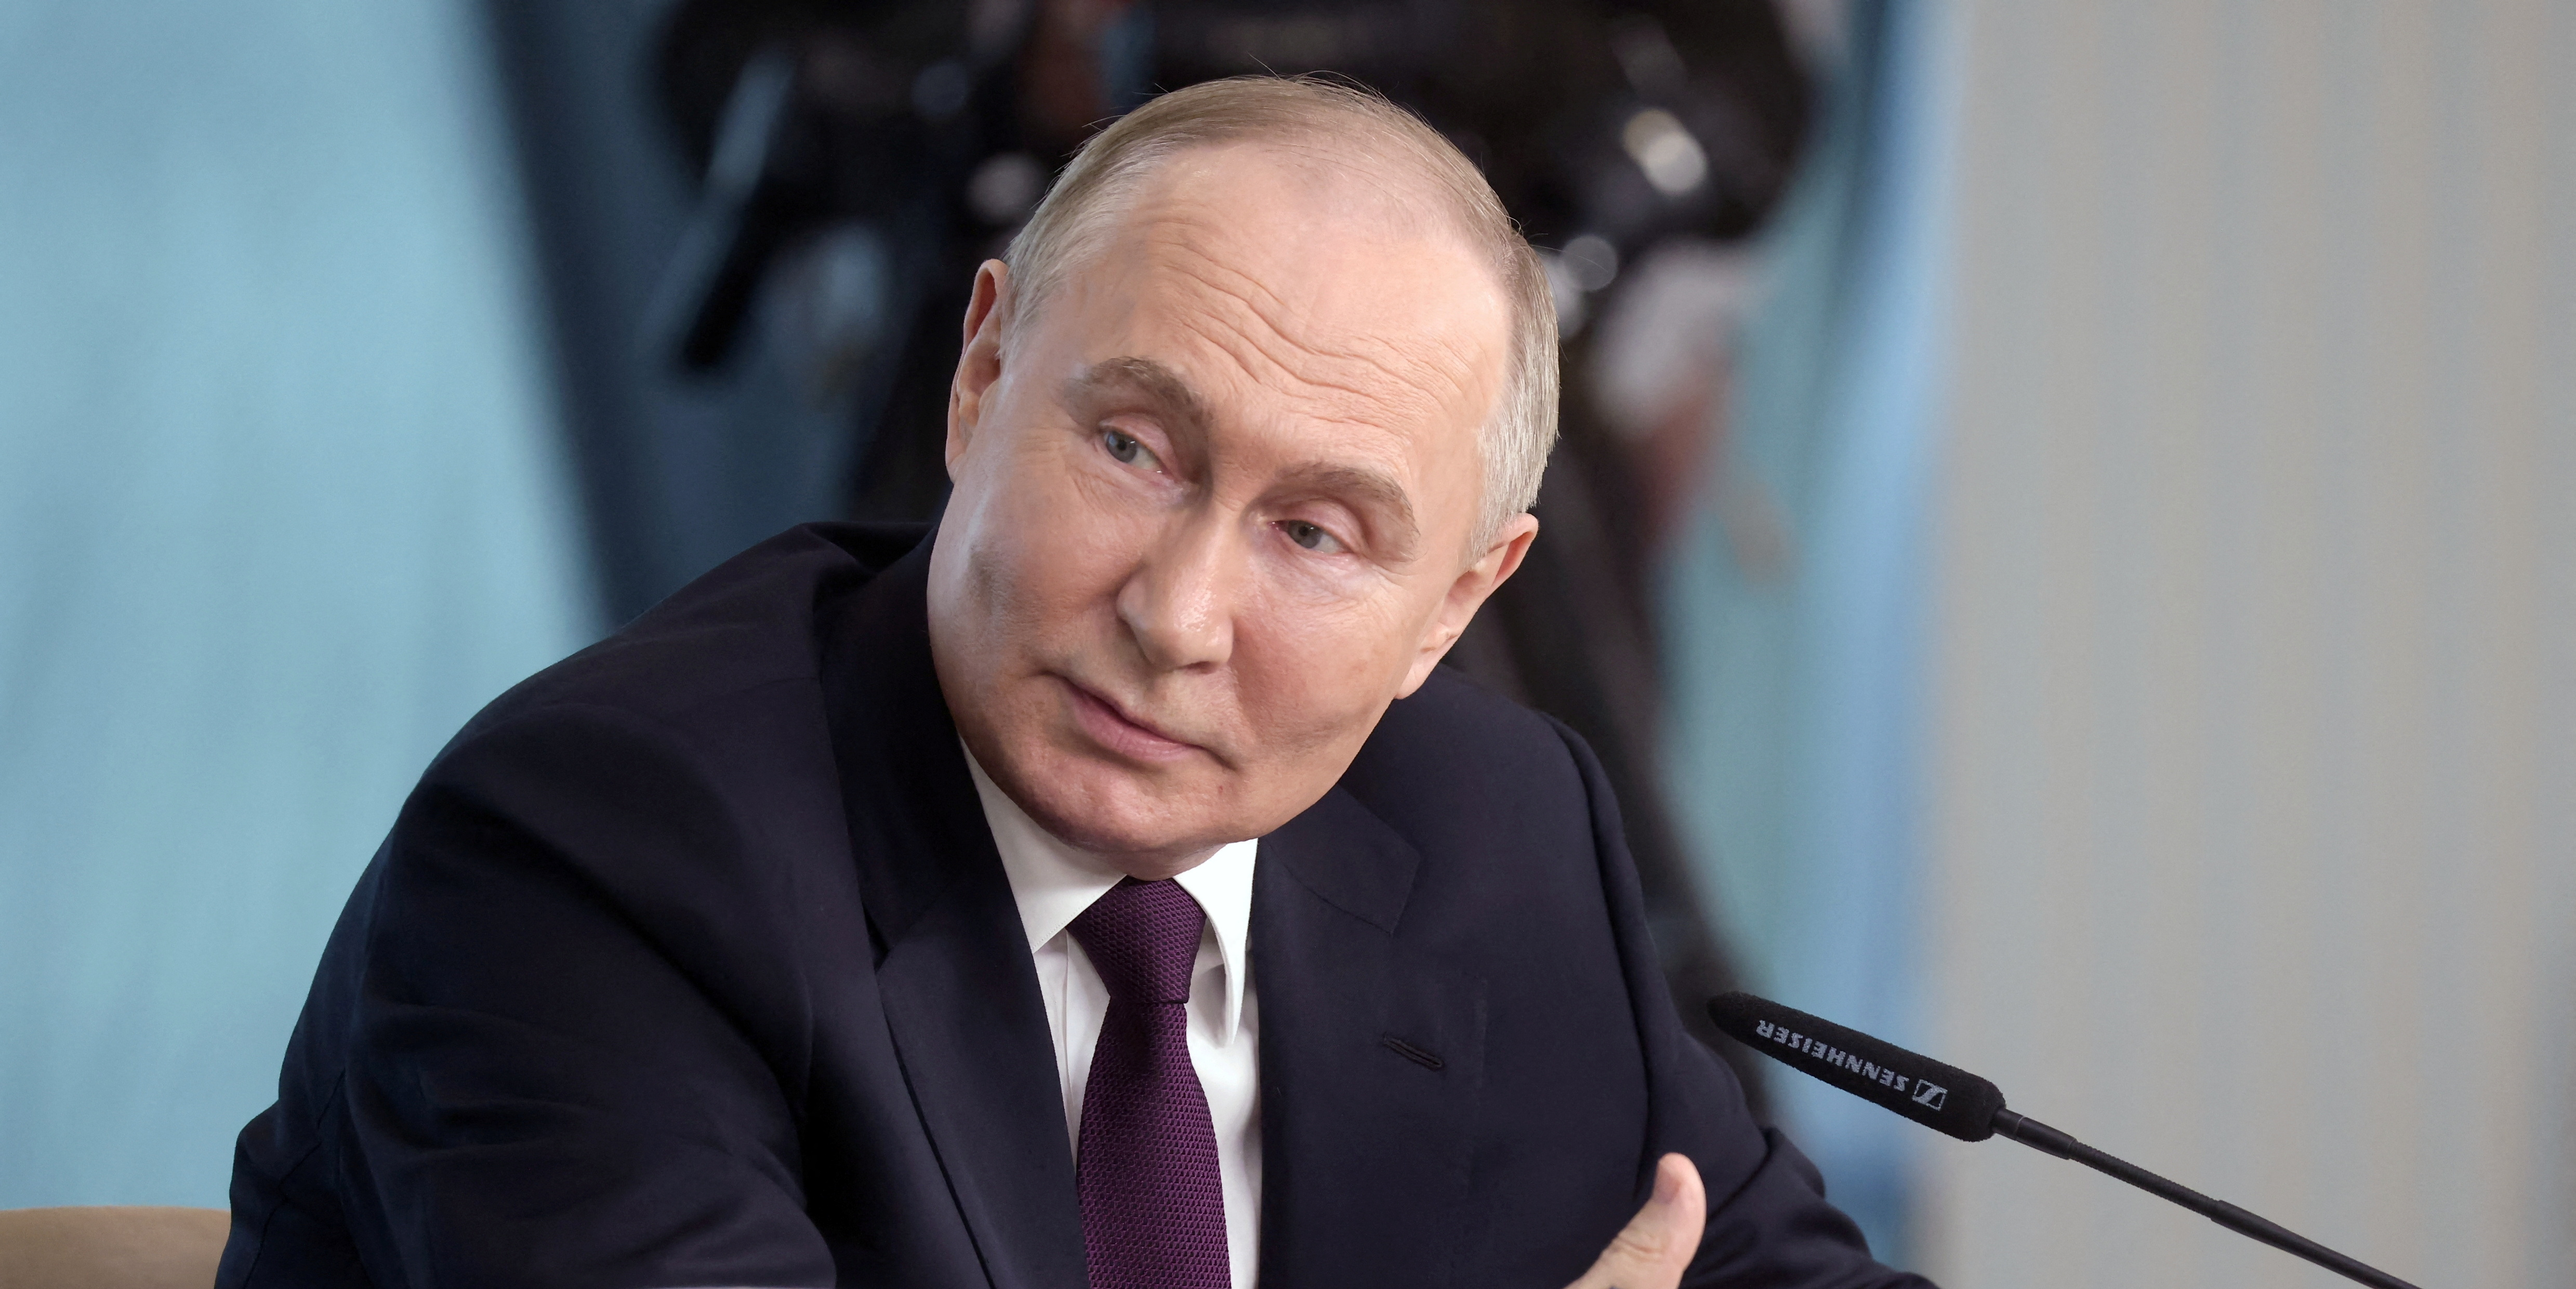 En Russie, Vladimir Poutine menace de livrer des armes à des pays tiers pour frapper les intérêts occidentaux